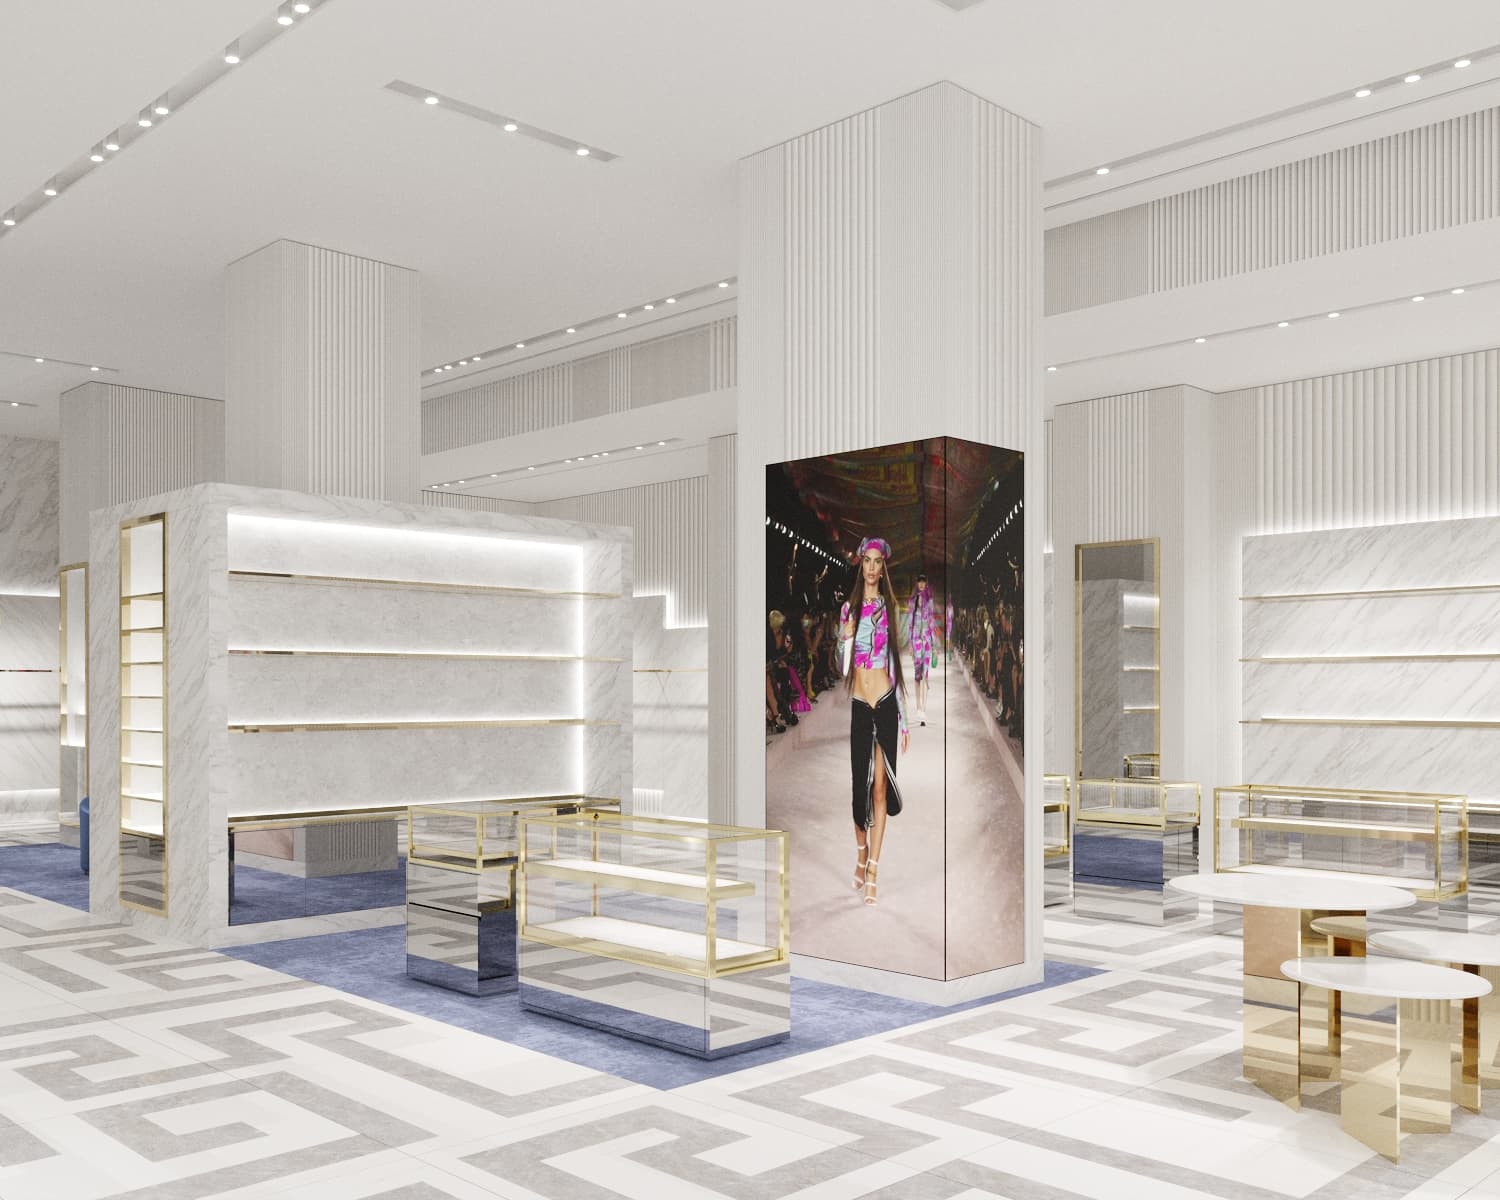 Louis Vuitton Opens a Madison Avenue Pop-Up Store